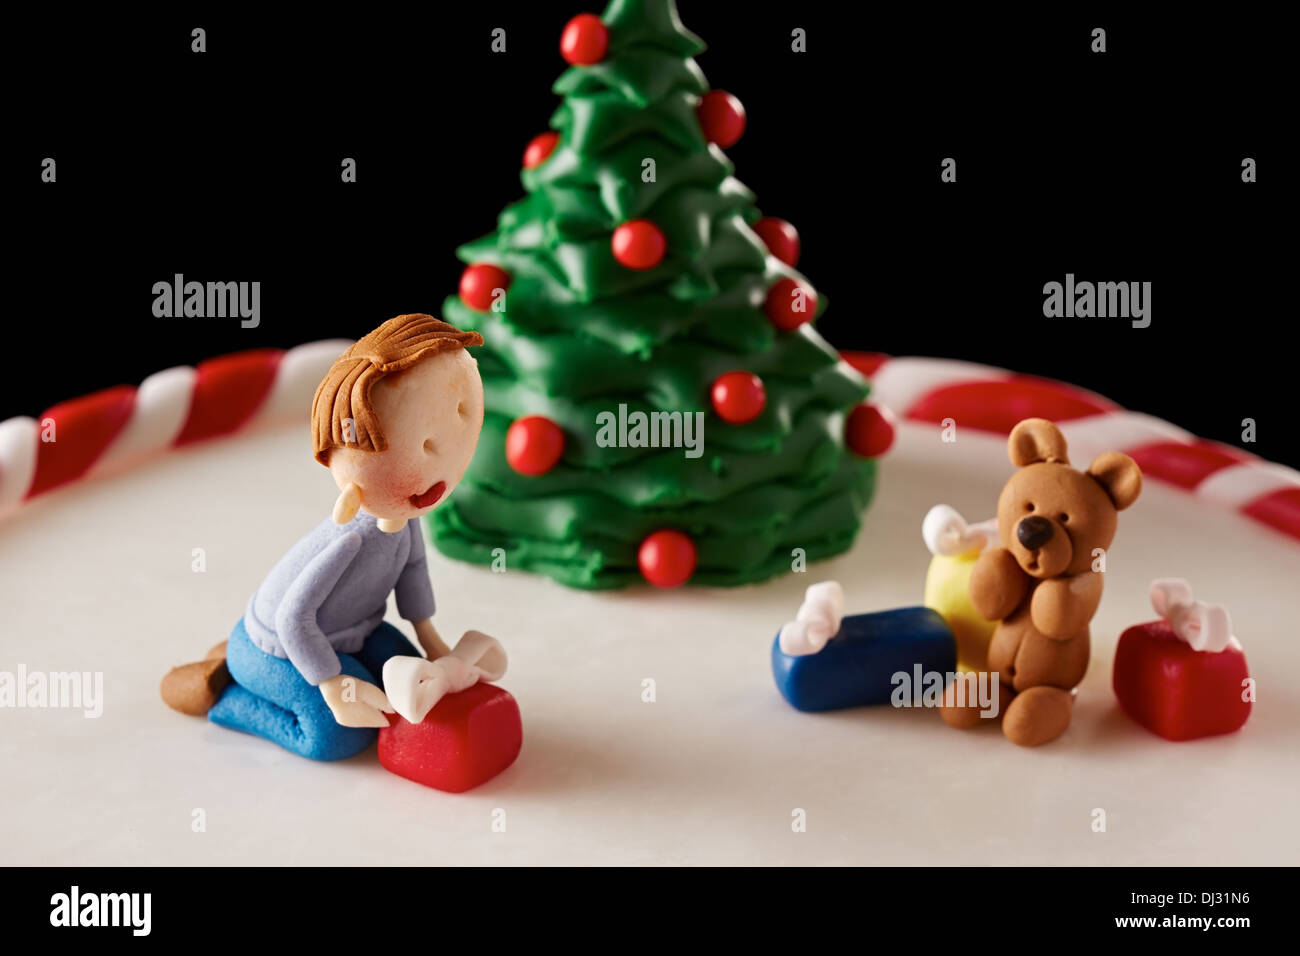 Fondente albero di Natale torta con un capretto e presenta dettagli Foto Stock